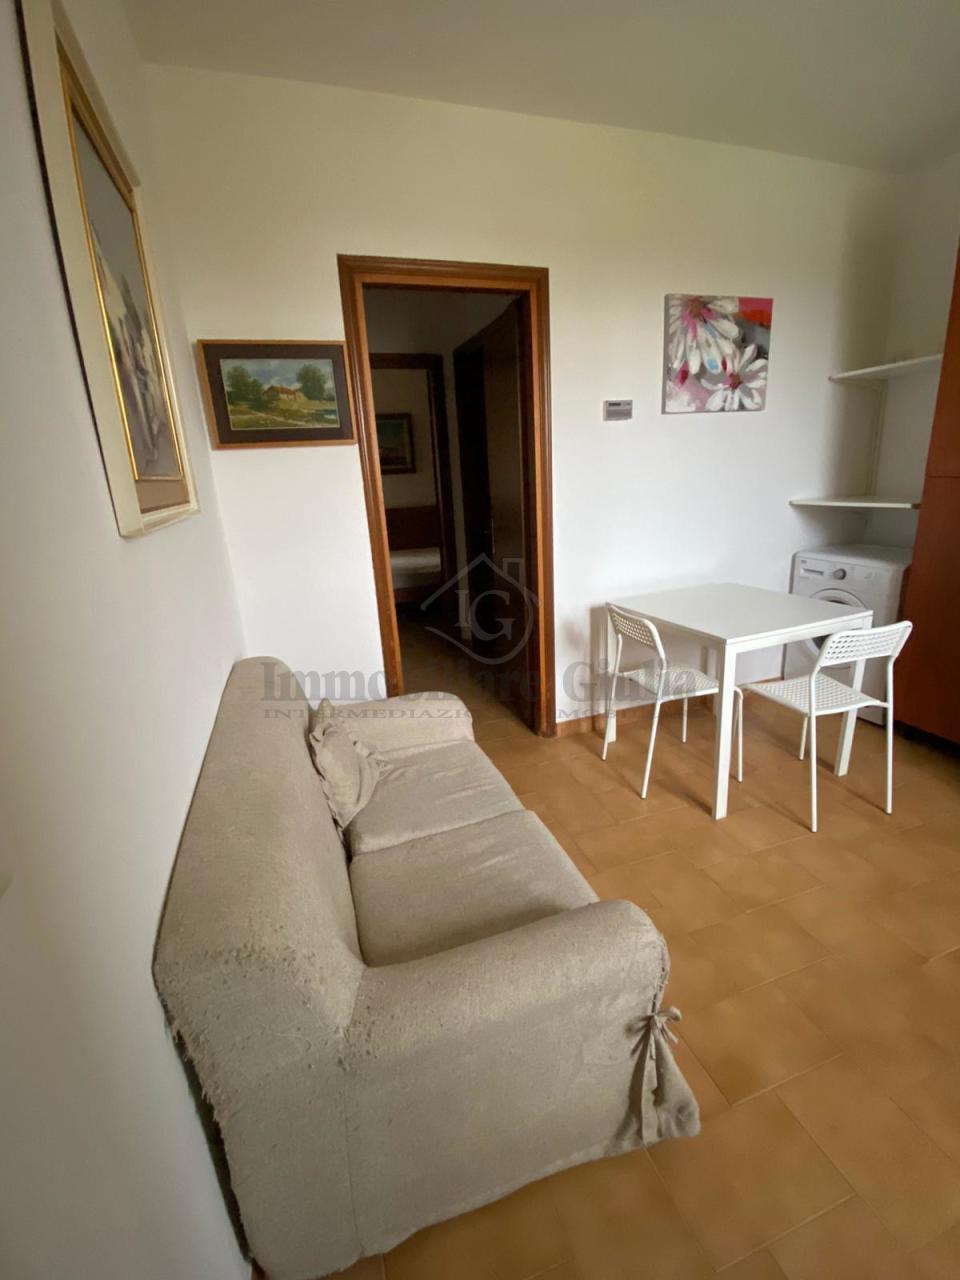 Appartamento in affitto a Torrile, 2 locali, prezzo € 360 | PortaleAgenzieImmobiliari.it